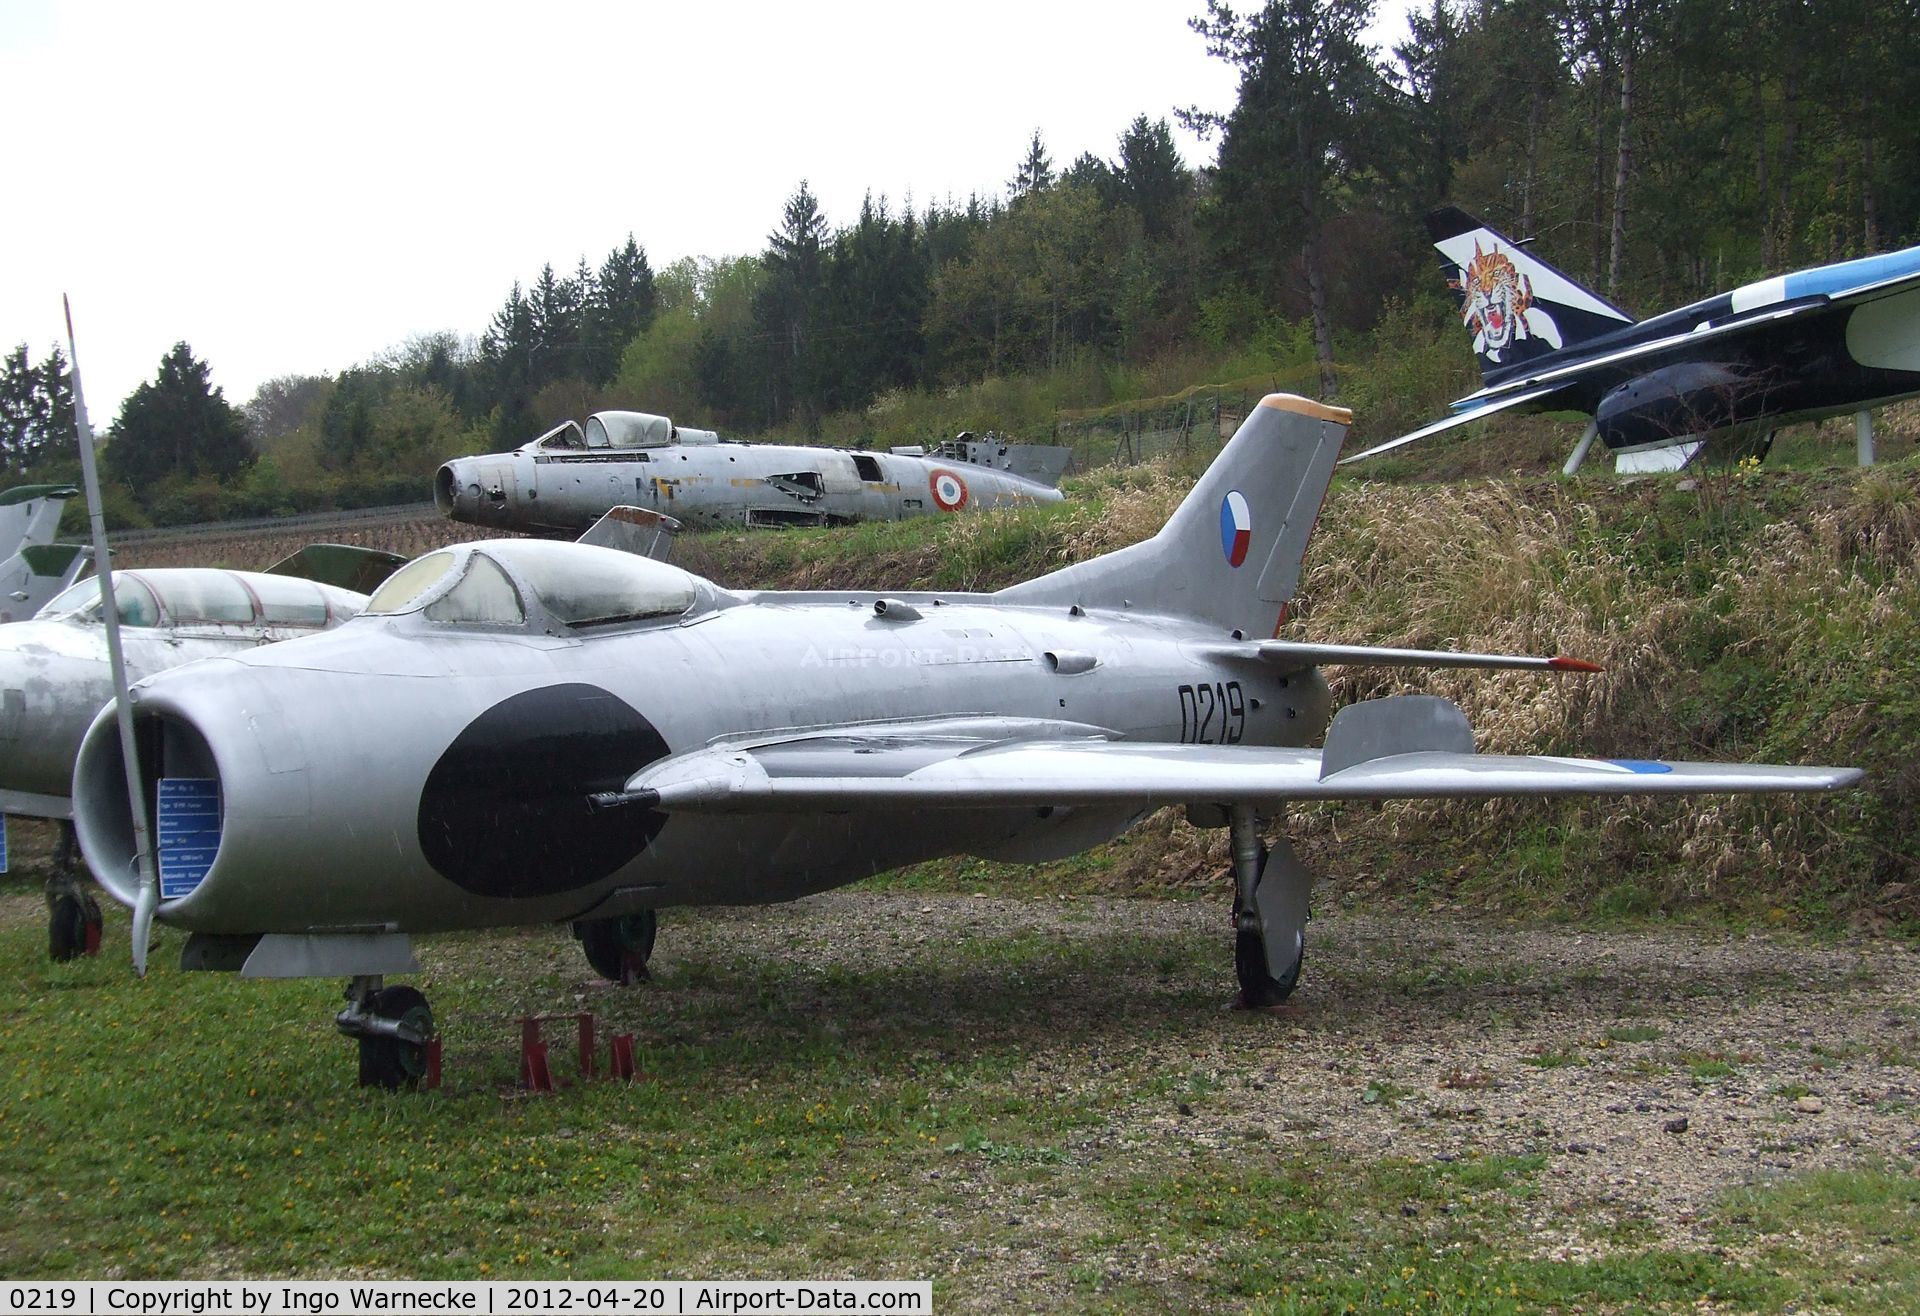 0219, Aero S-105 (MiG-19S) C/N 050219, Aero S-105 (MiG-19S) FARMER-C at the Musee de l'Aviation du Chateau, Savigny-les-Beaune